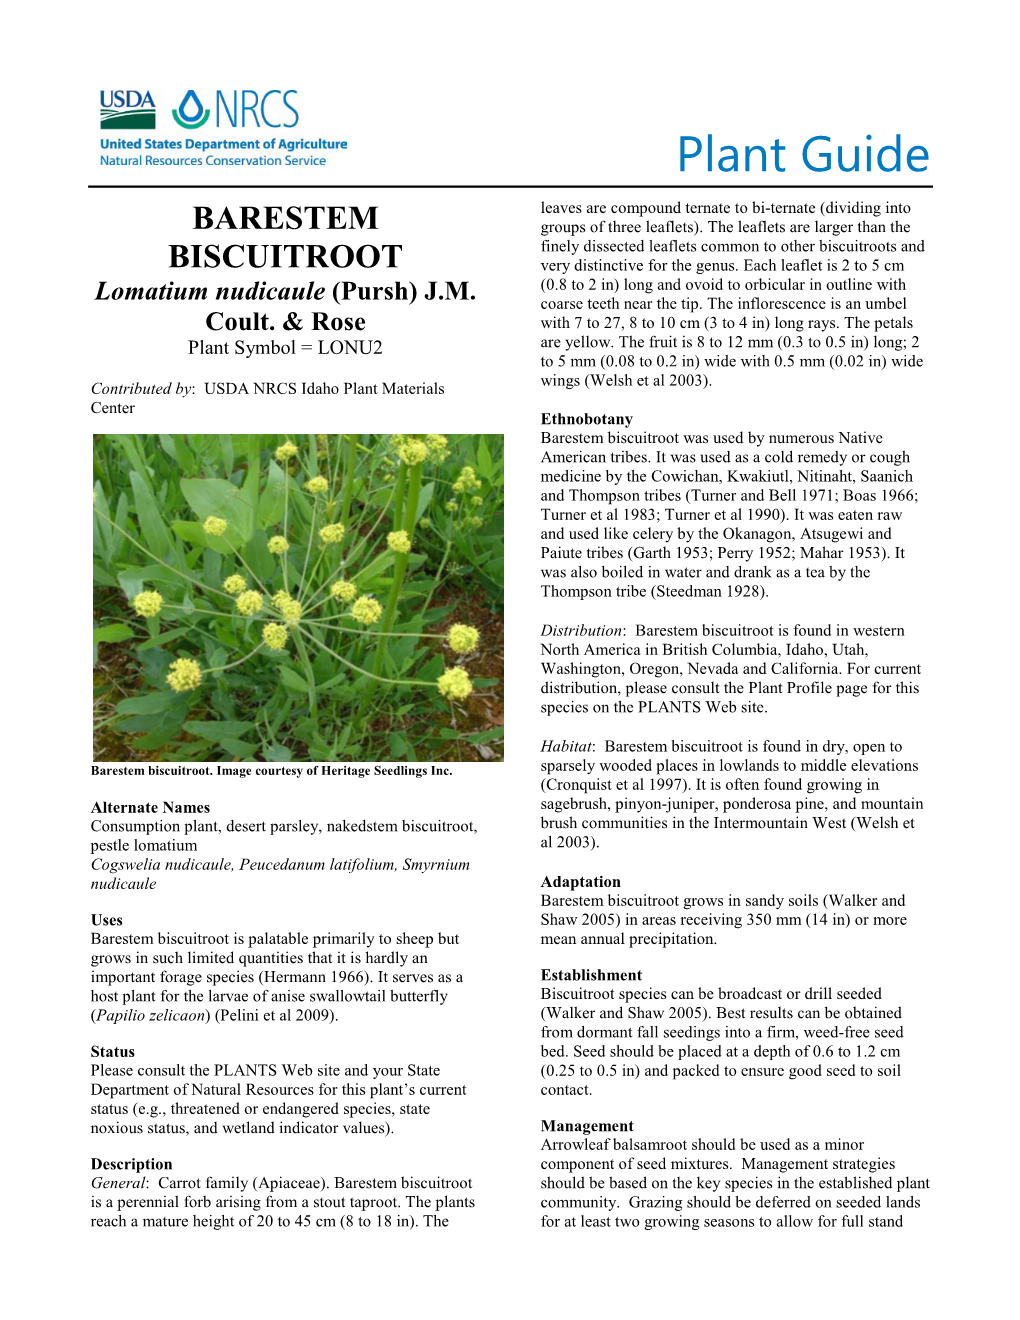 Plant Guide for Barestem Biscuitroot (Lomatium Nudicaule)